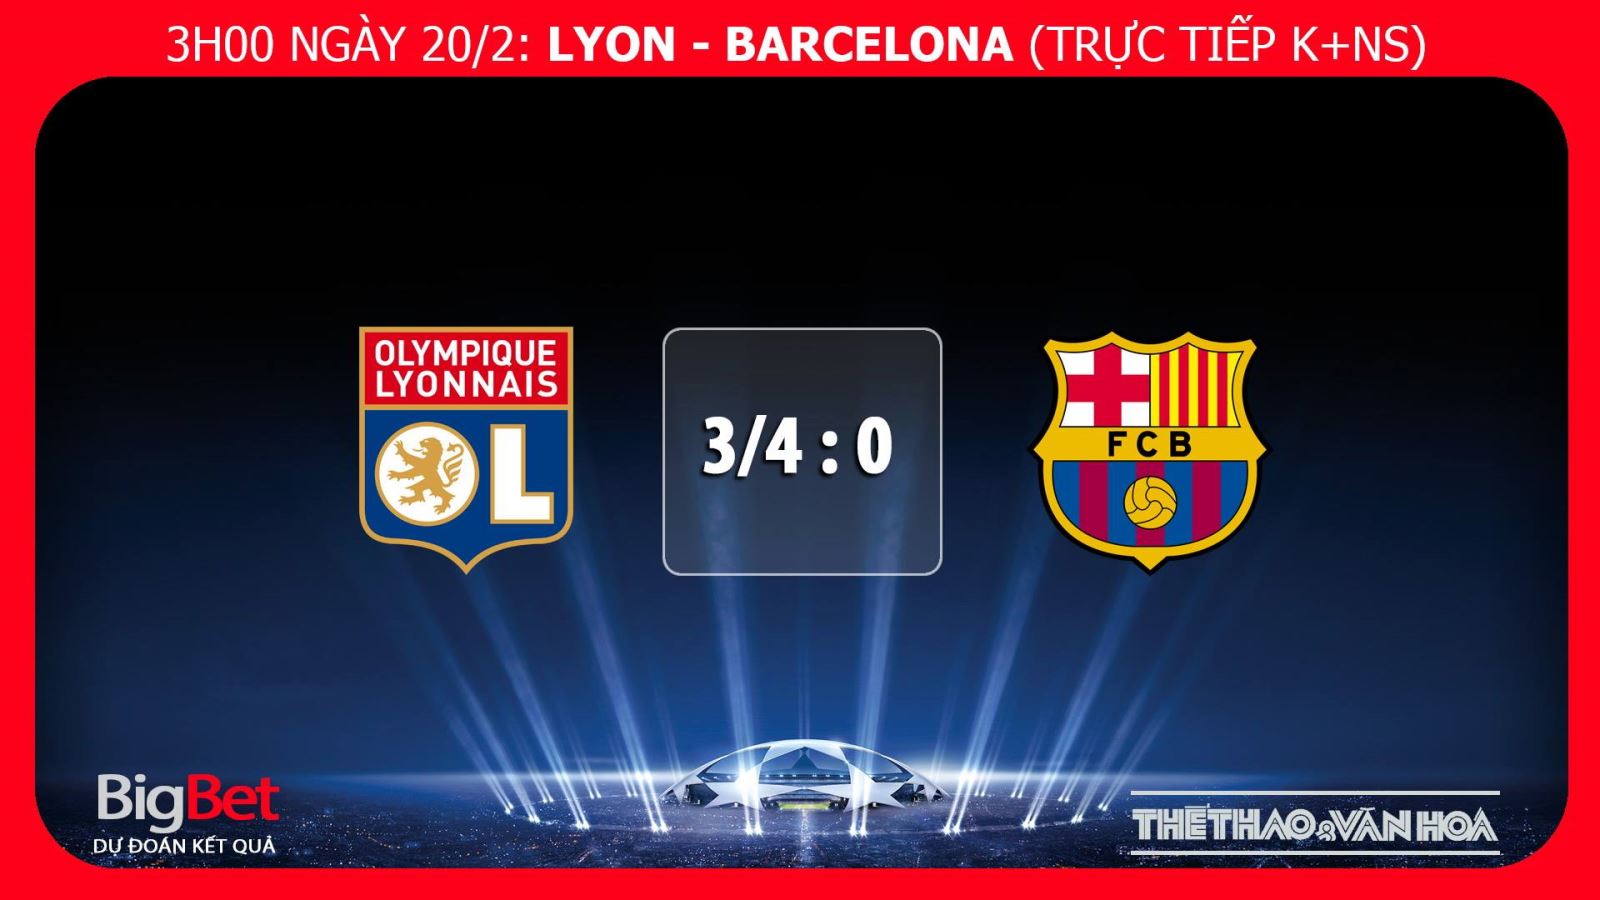 Kèo bóng đá, Nhận định bóng đá Lyon Barca, kèo Barca vs Lyon, kèo Lyon Barca, kèo Barca, trực tiếp bóng đá, trực tiếp Lyon Barcelona, truc tiep Barca, truc tiep bong da